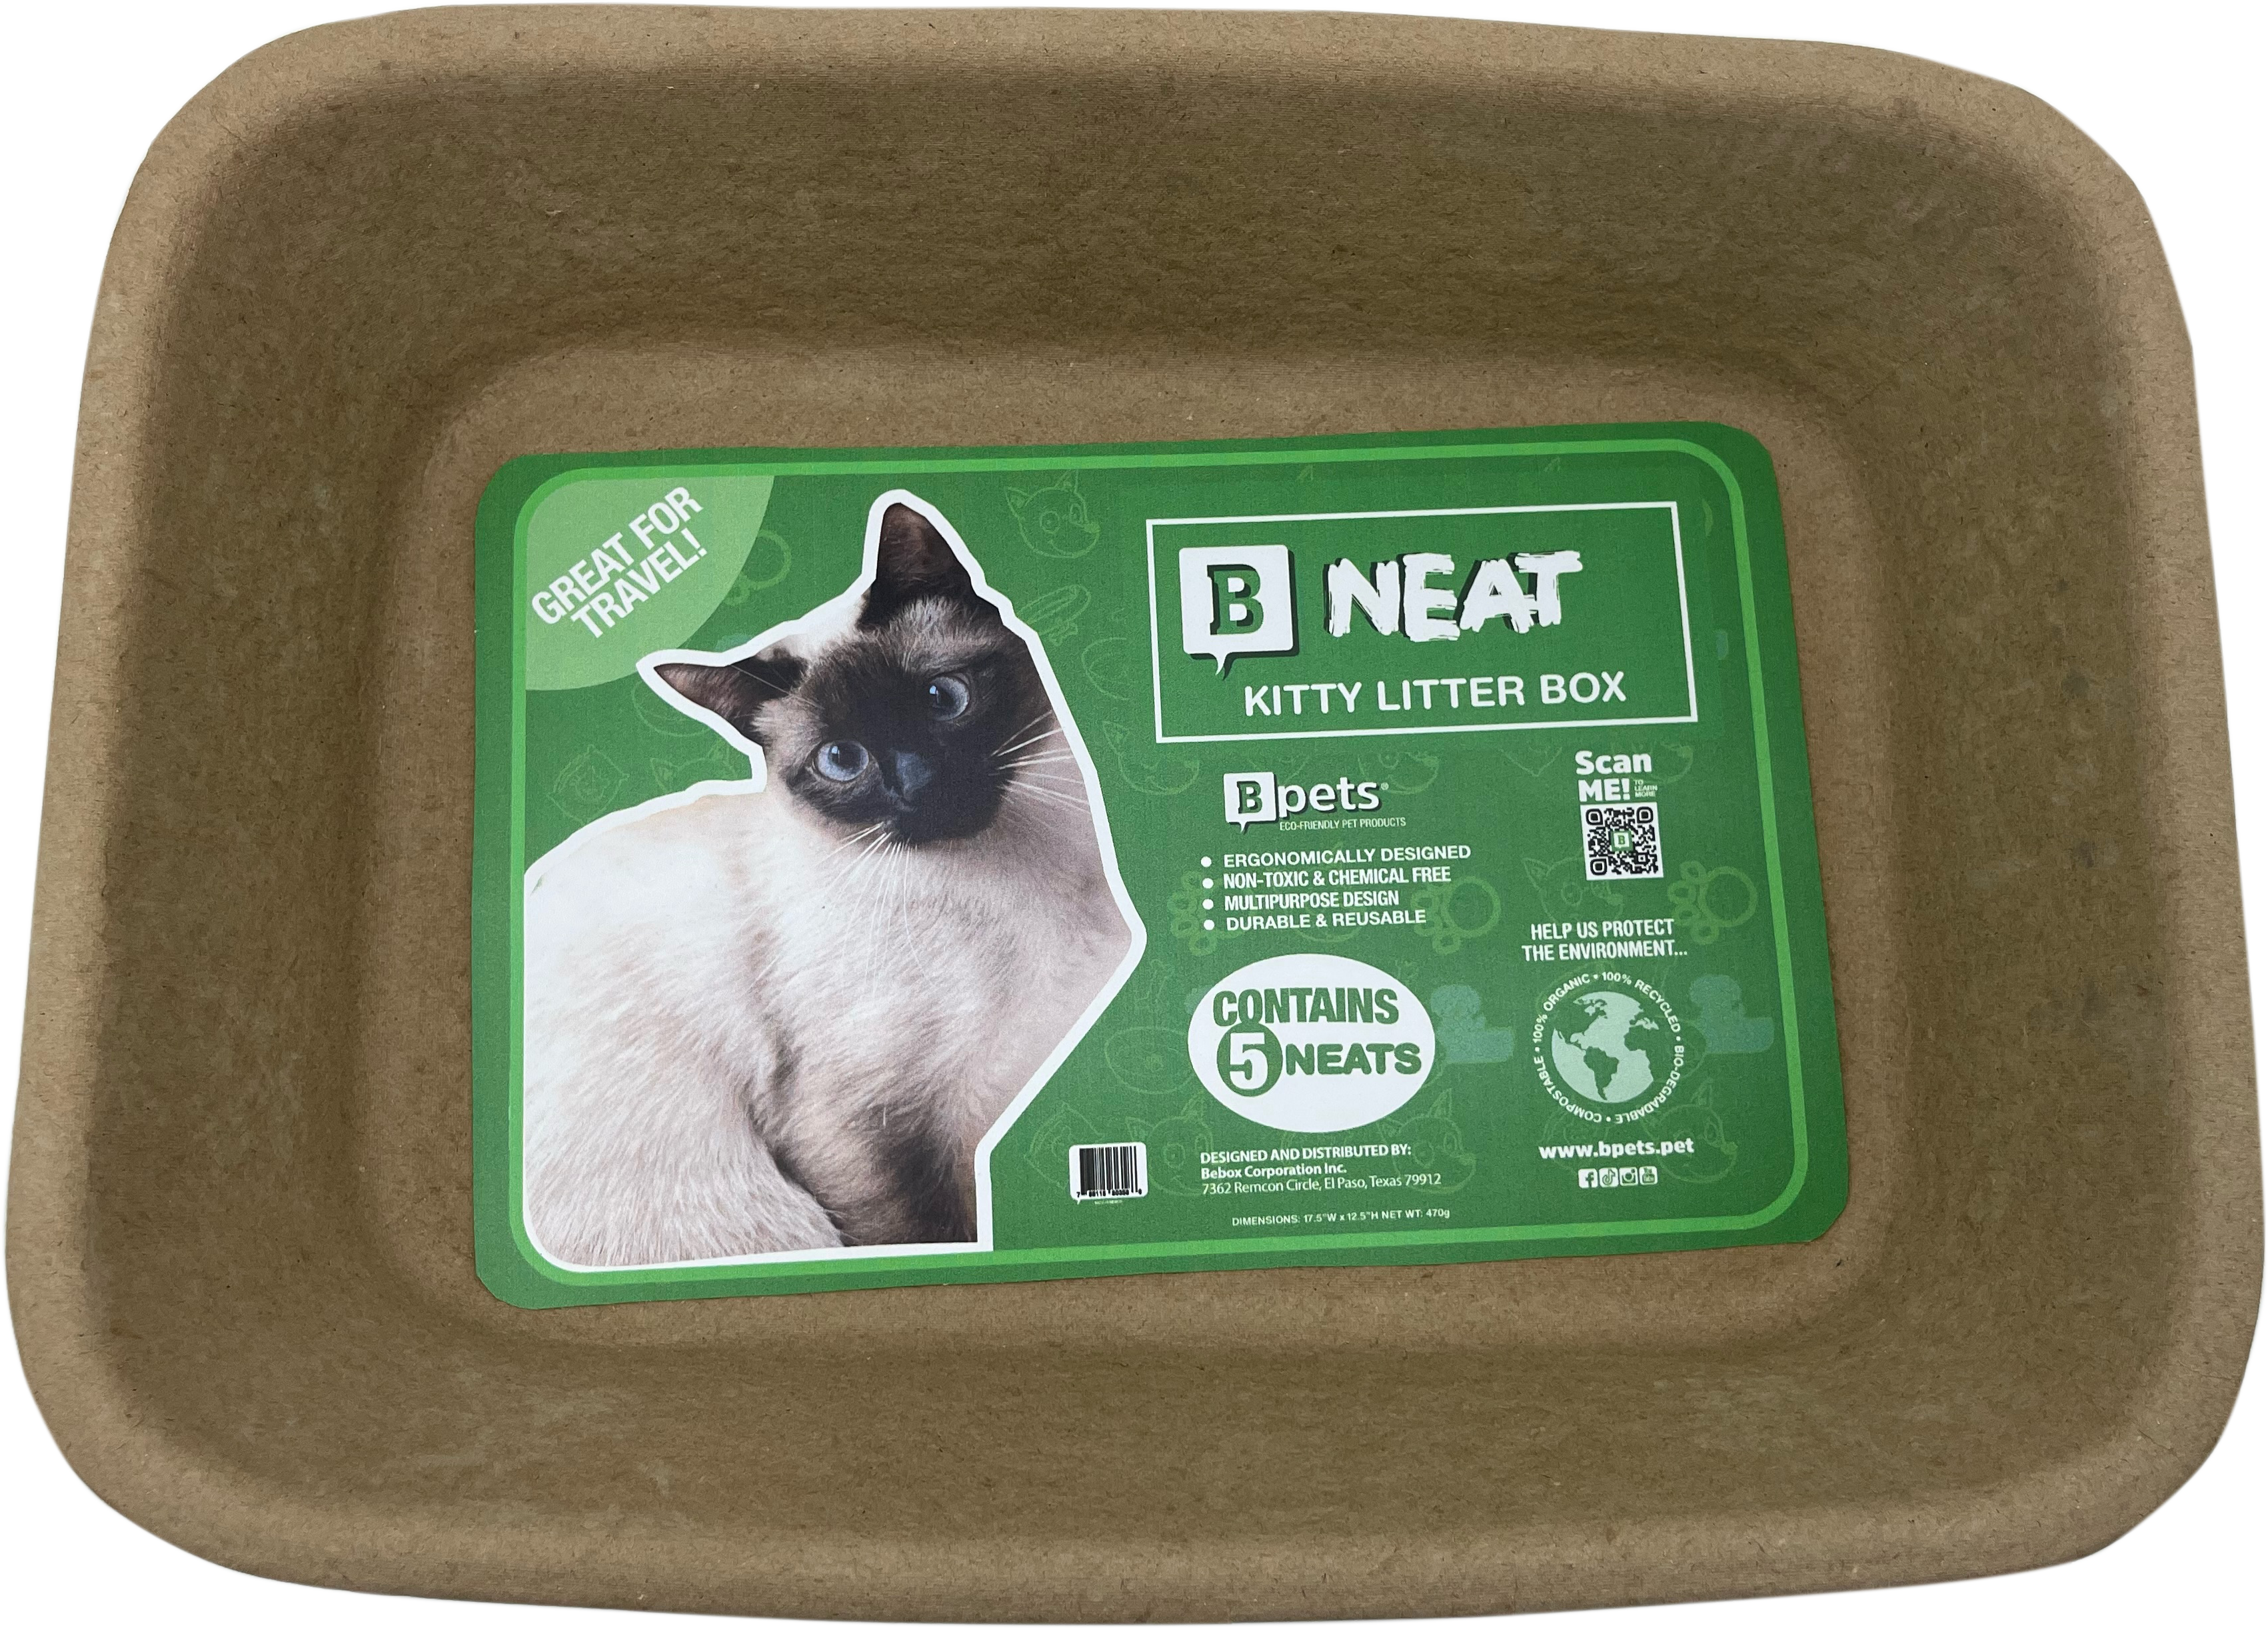 B Neat - Kitty Litter box